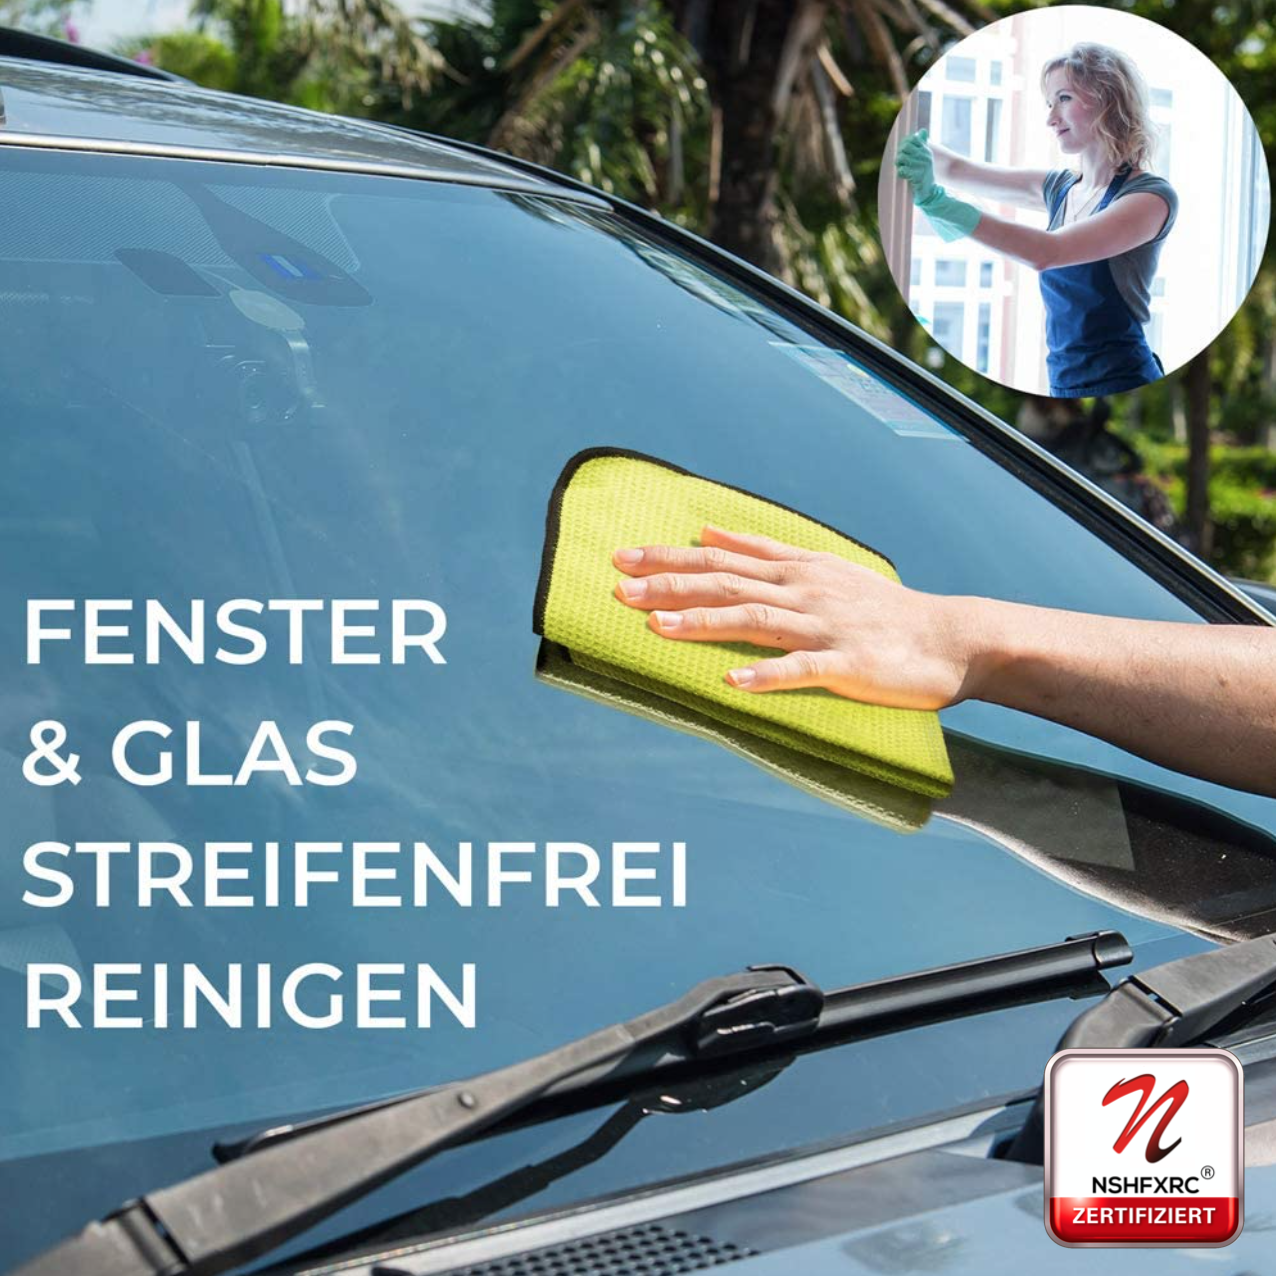 2er Pack Mr. Blubber Microfasertuch für Fenster, Waffeltuch, Wassermagnet / Glastuch zur Autopflege